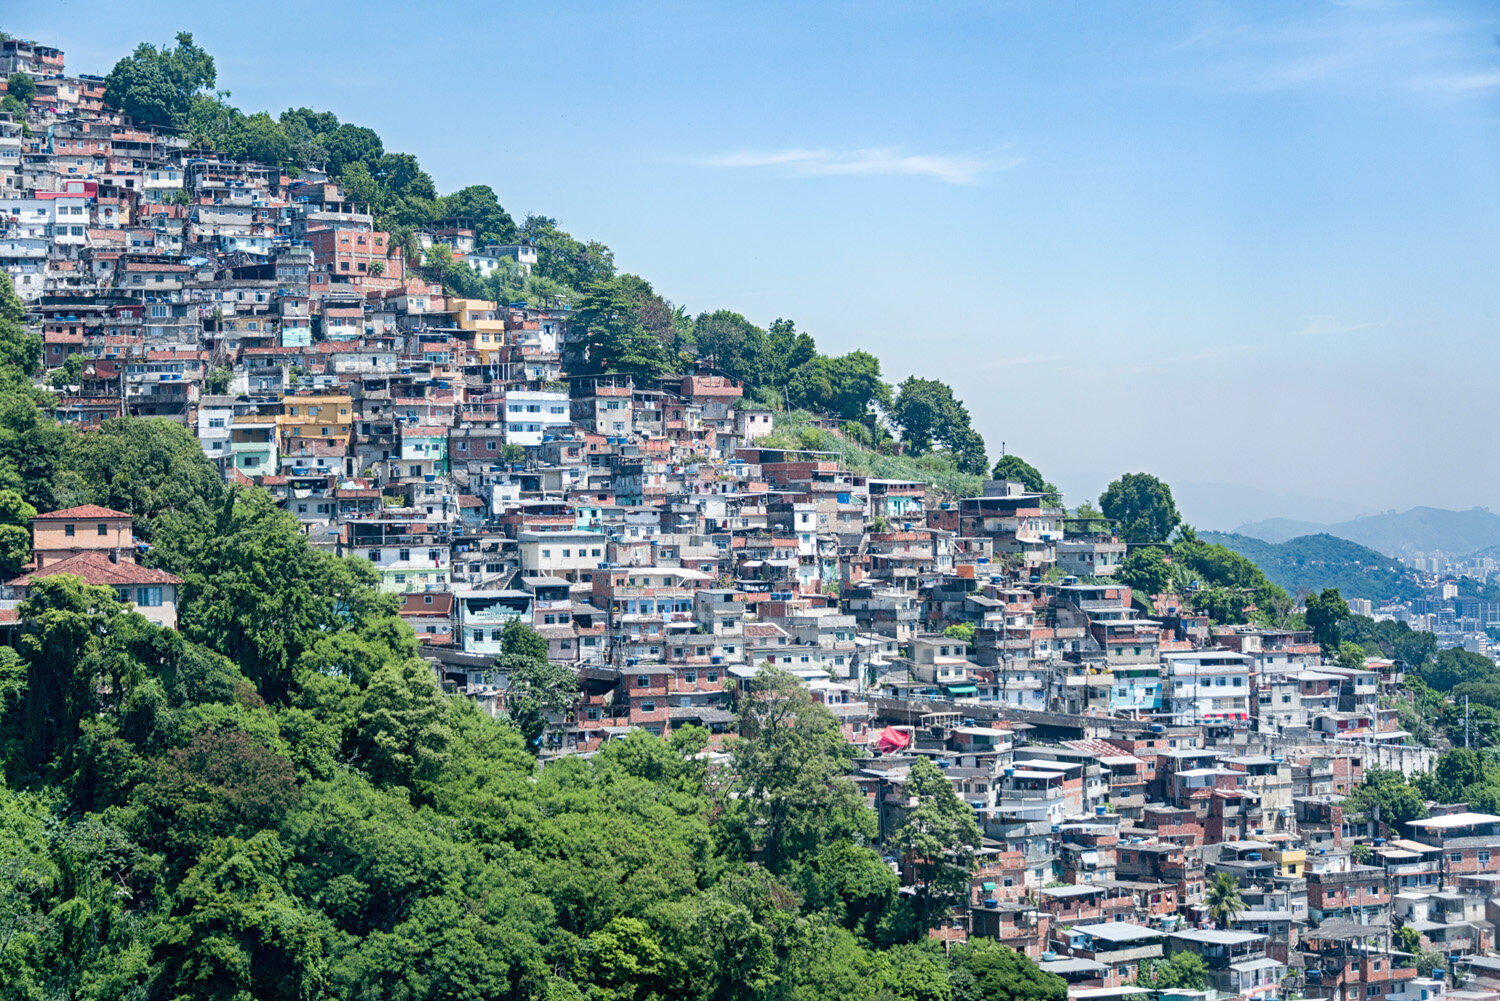 Brazil-Rio de Janiero-Favela-01.jpg